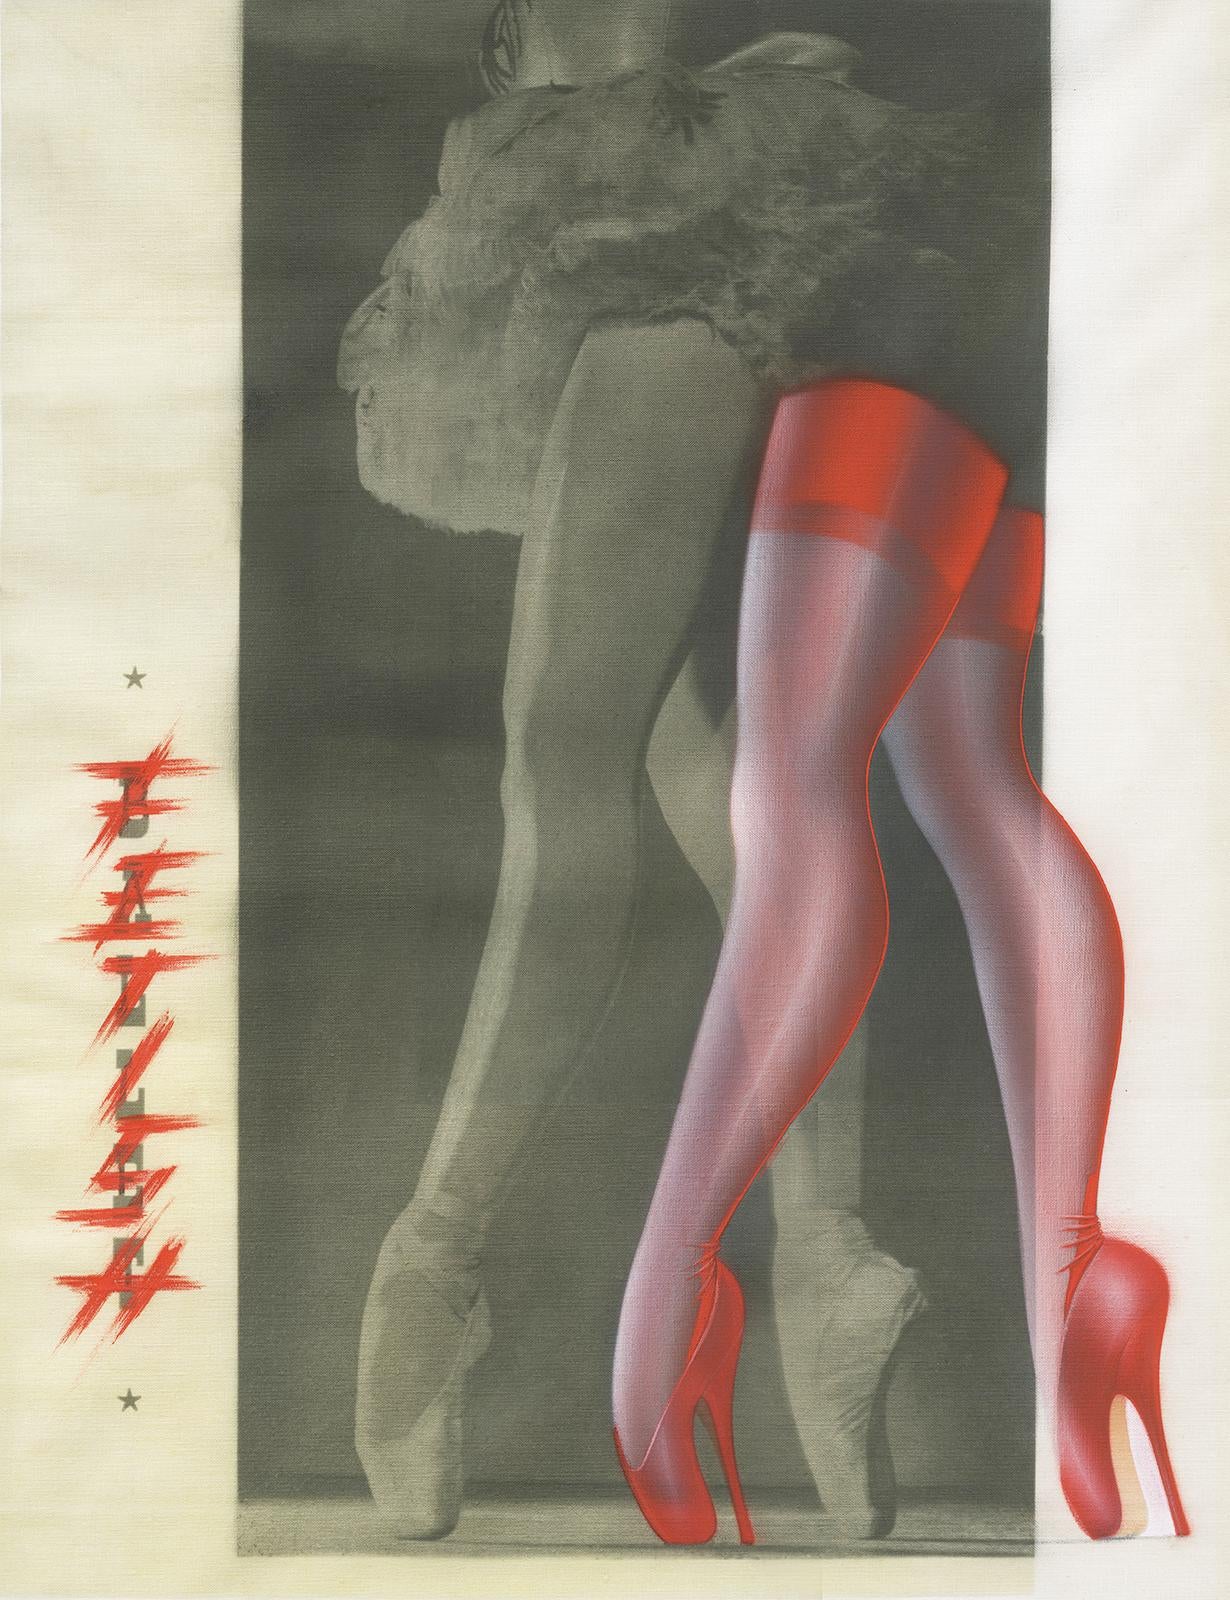 Ballett/Fetisch  -  Signierter Kunstdruck in limitierter Auflage   -   Auflage:  1 von 5
Airbrush-Malerei über altem Schwarz-Weiß-Foto

Dieses Bild wurde 1983 auf Film festgehalten. 
Das Negativ wurde gescannt und eine digitale Datei erstellt, die